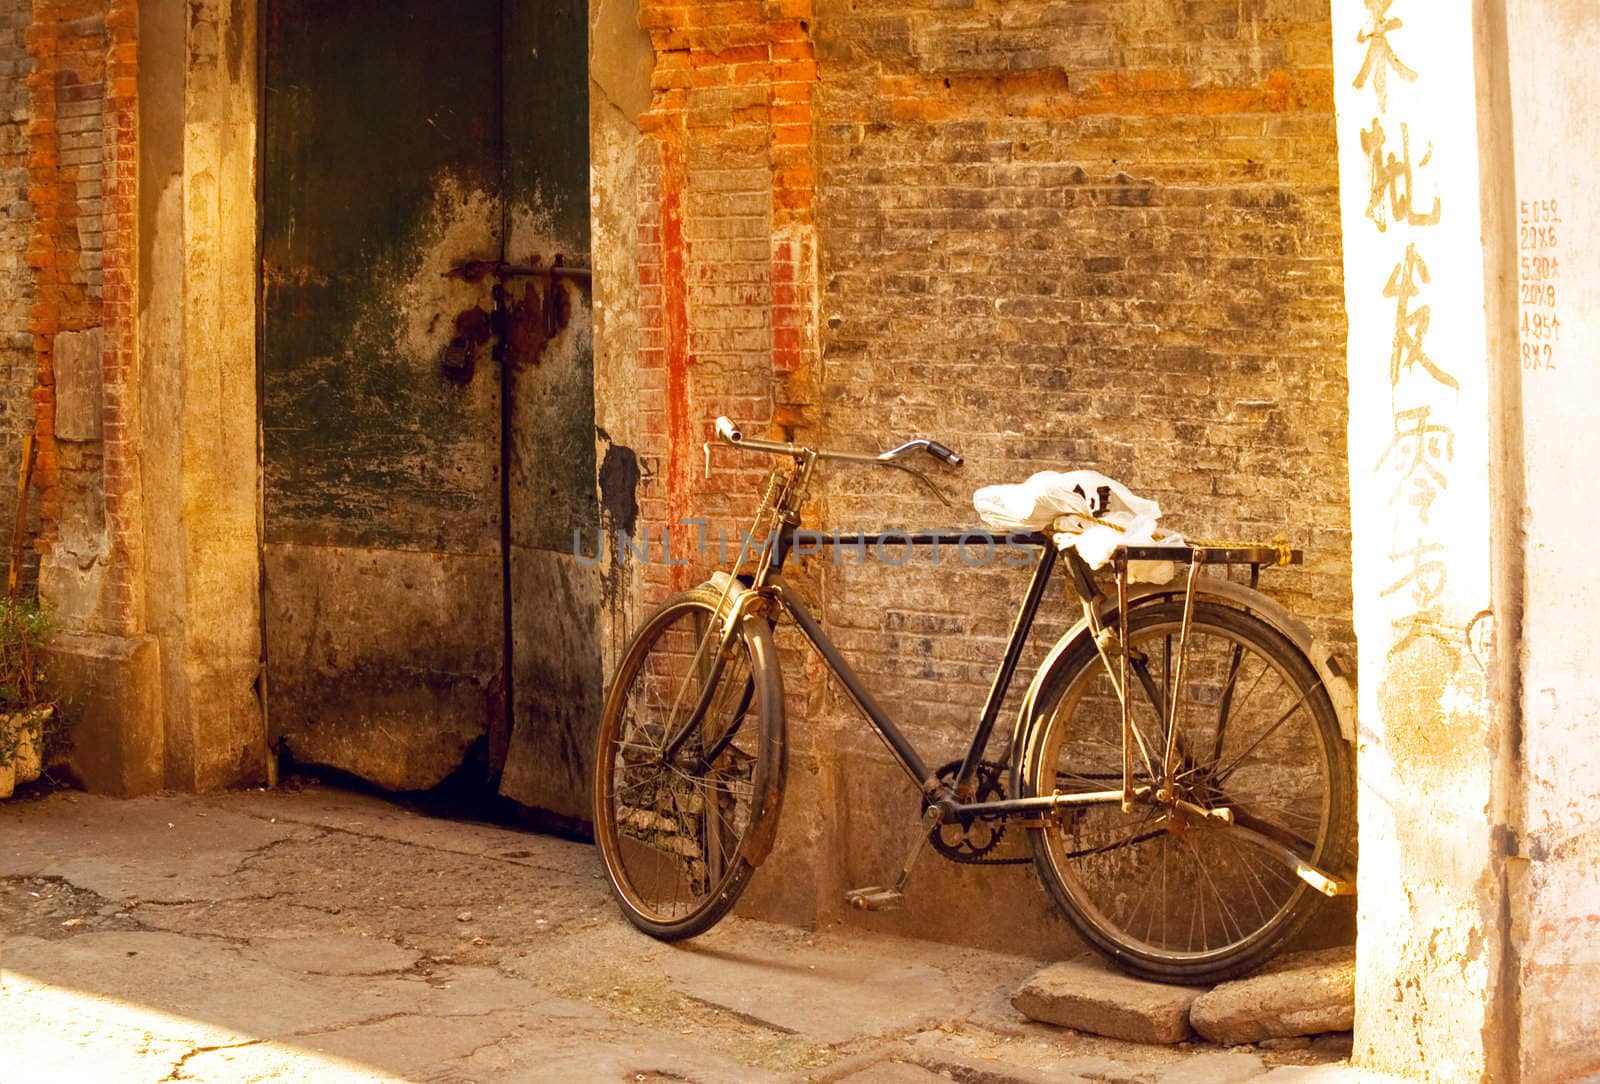 shanghai old bicycle by keko64